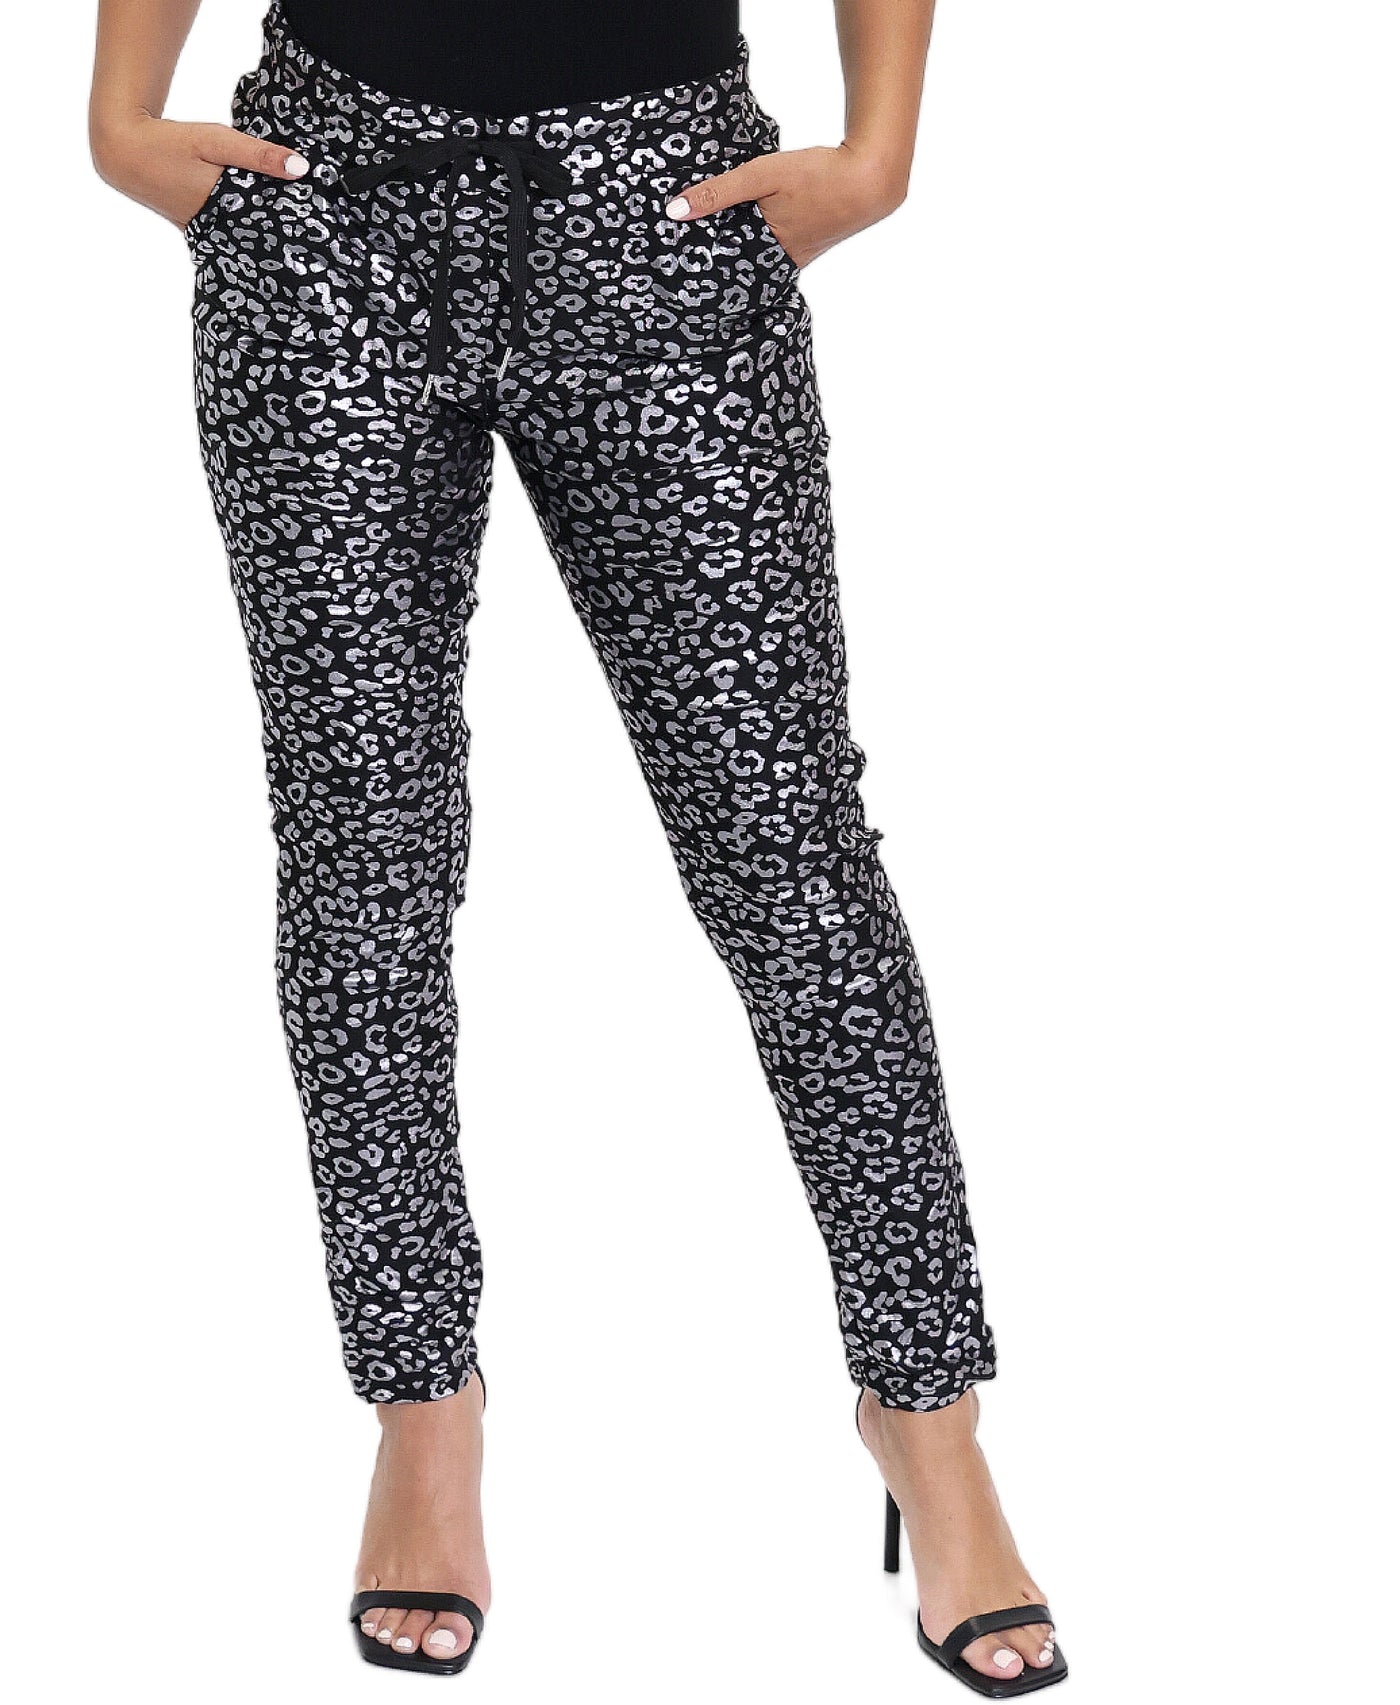 Shimmer Leopard Print Pants image 1